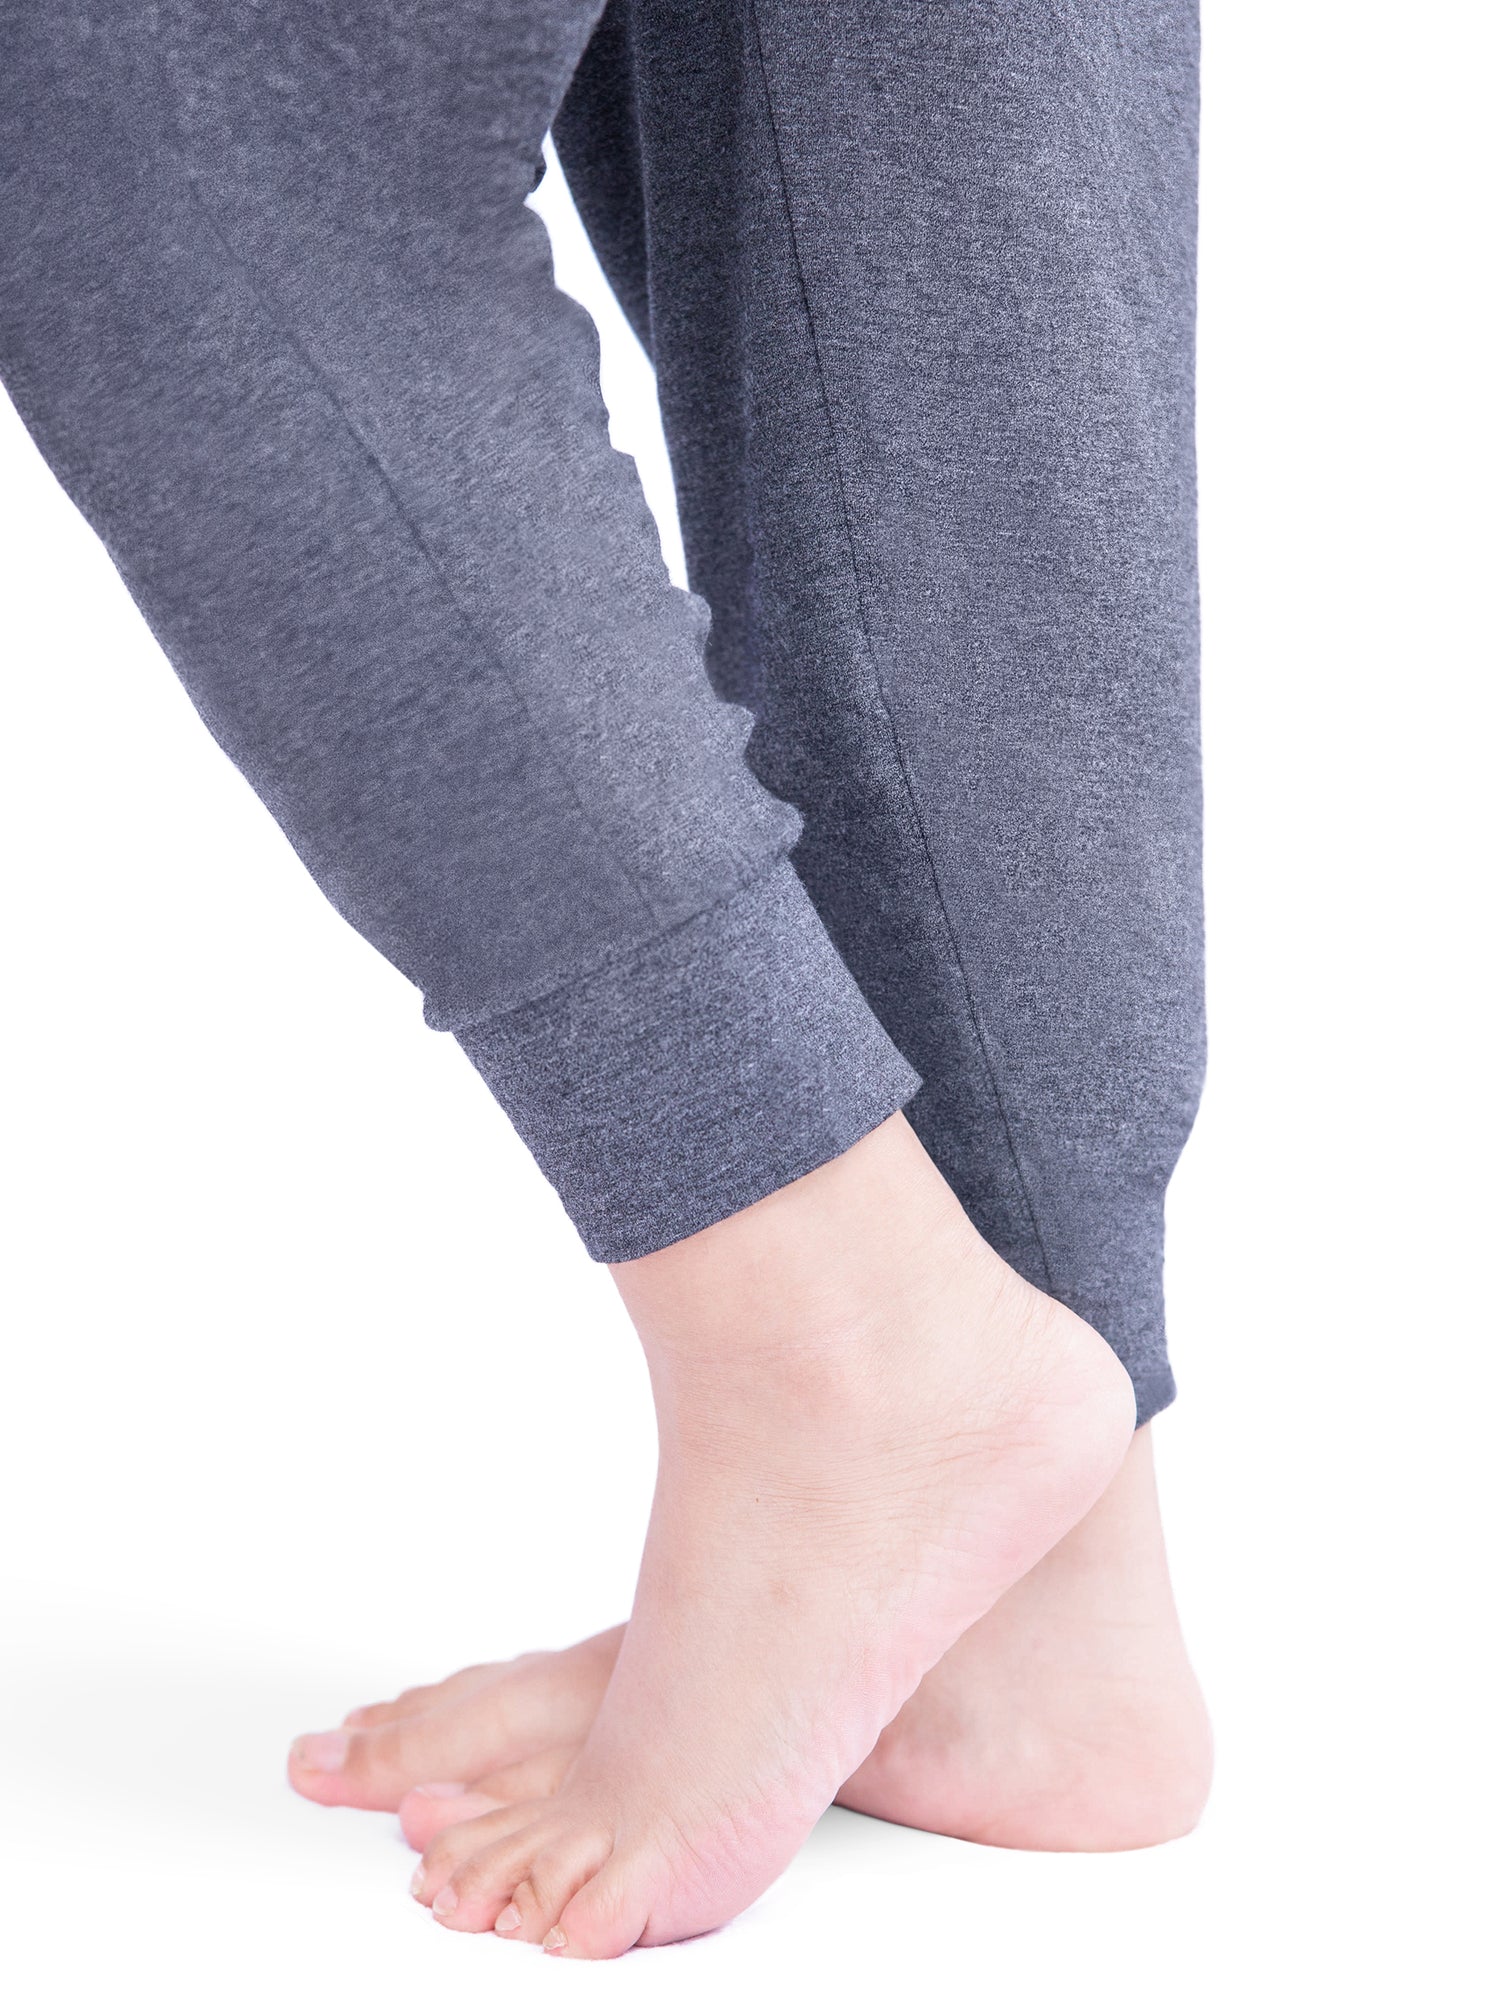 Women's Drawstring Lounge Pants • Size: L/XL (Sizes 10-14